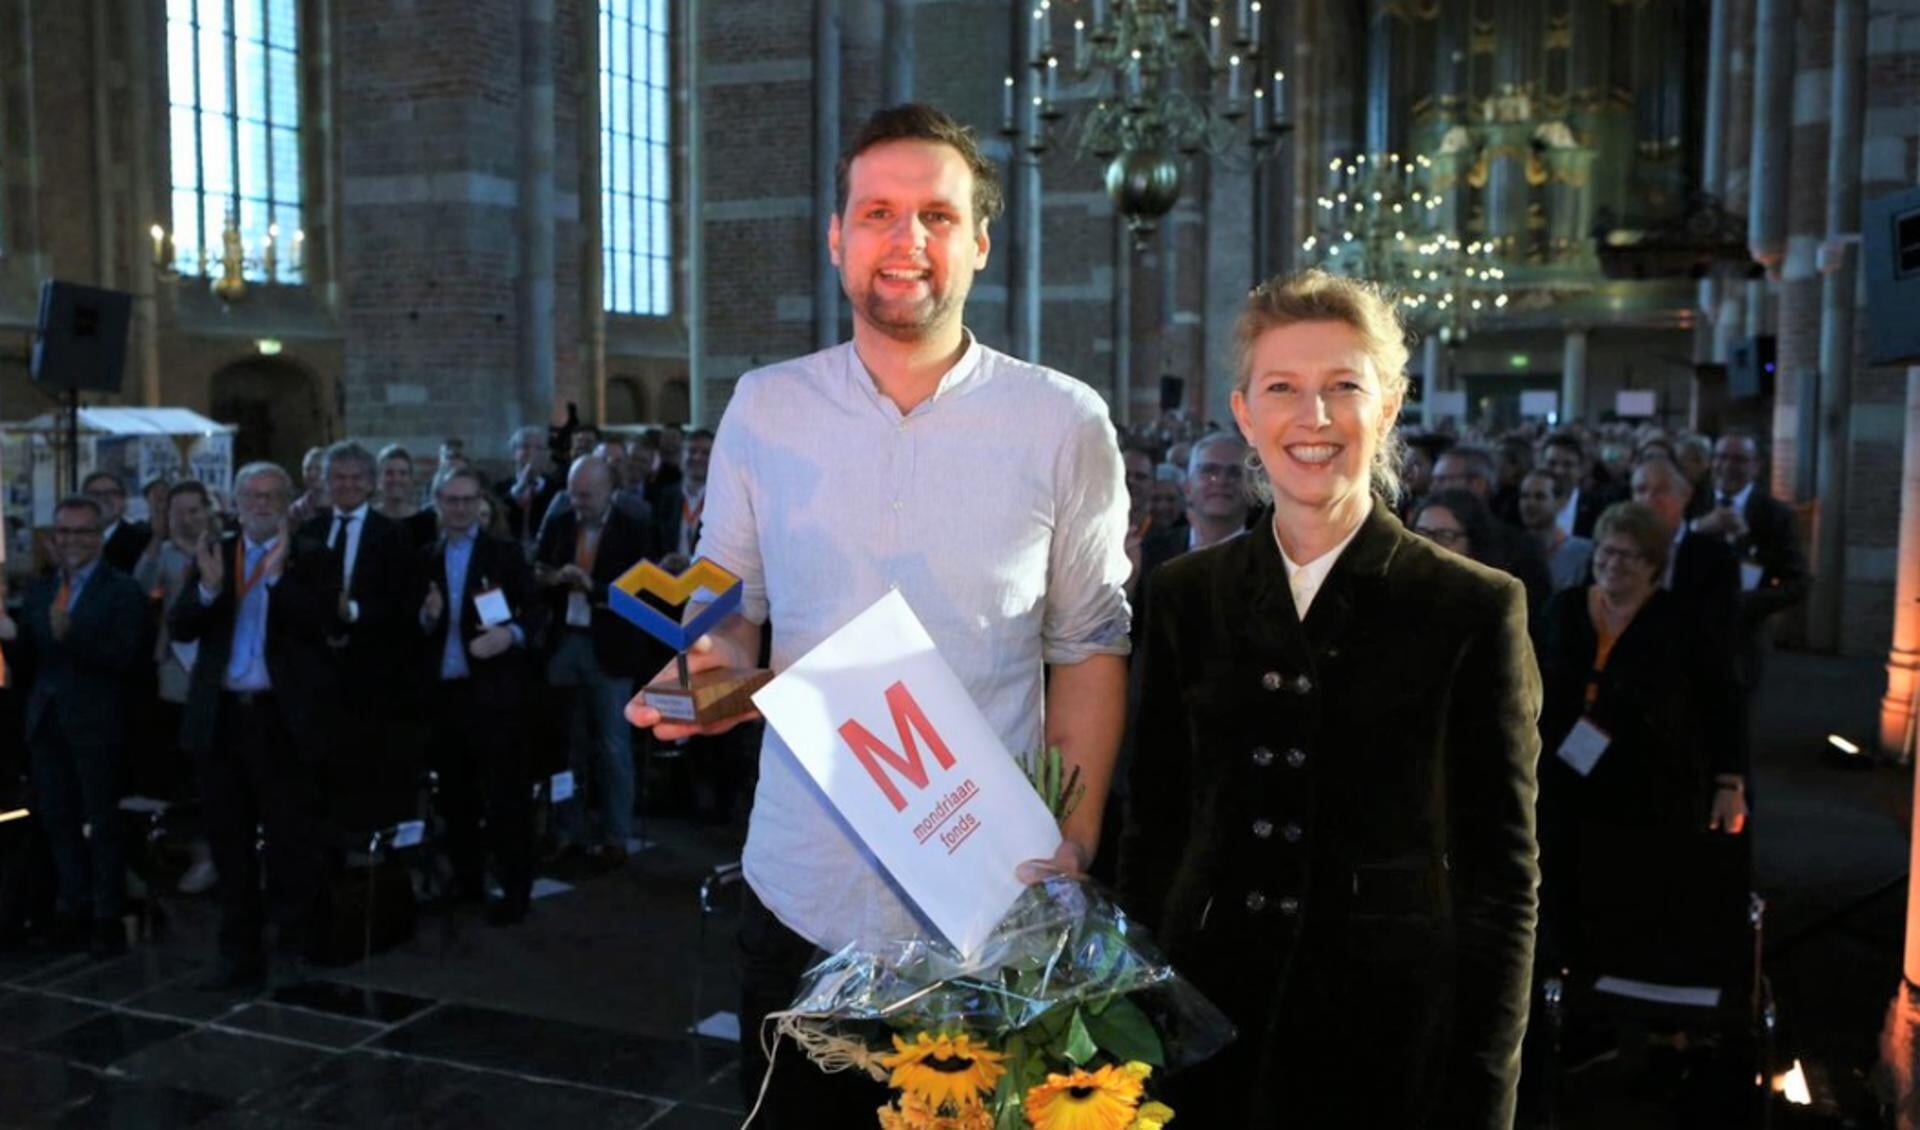 Christian Pfeiffer van Erfgoedvereniging Heemschut is 'woest' op de gemeente Amersfoort. In 2019 ontving Pfeiffer (links) een onderscheiding van de Rijksdienst voor het Cultureel Erfgoed. 